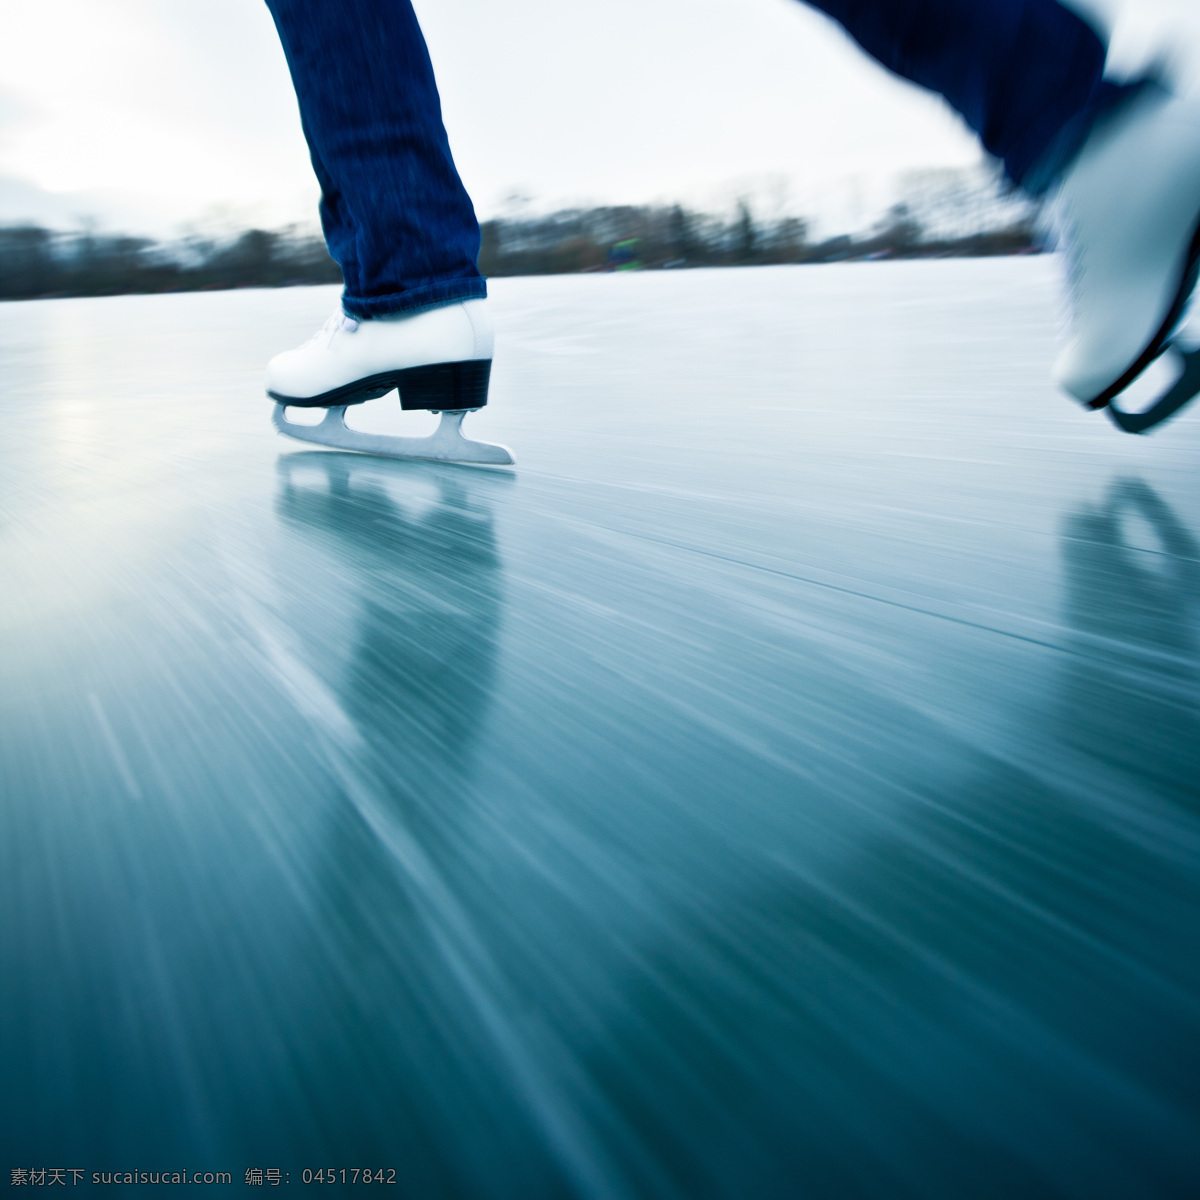 溜冰 人物 奔跑 溜冰鞋 滑冰 体育 运动 健身 人物摄影 生活人物 体育运动 生活百科